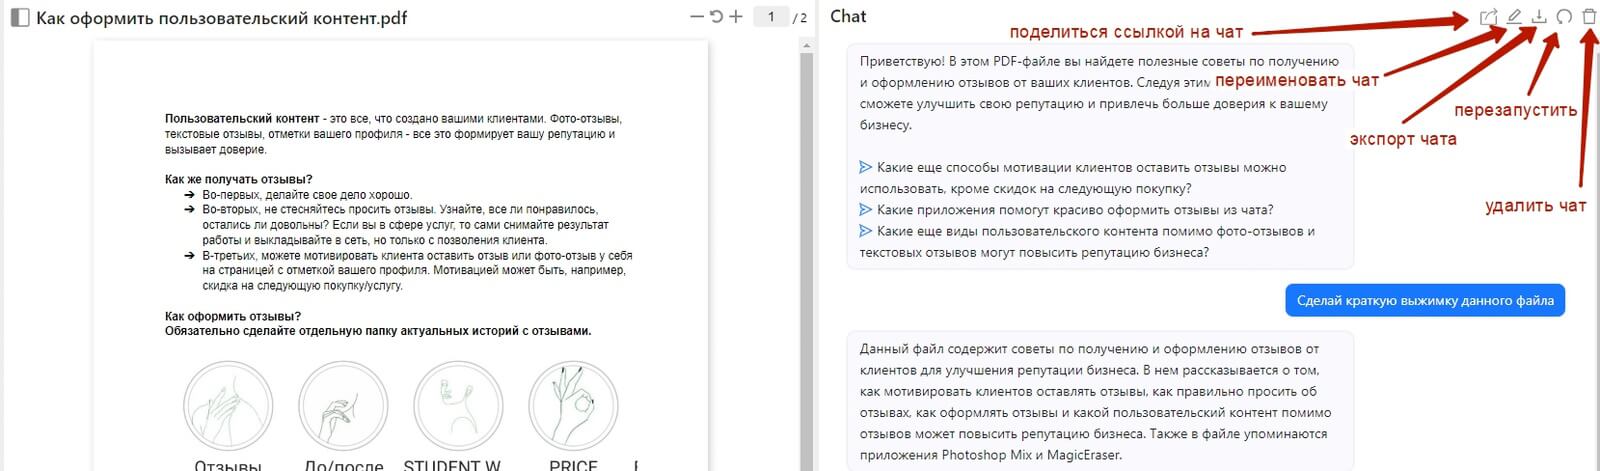 Как пользоваться нейросетью Chat PDF? Видеоурок с обзором